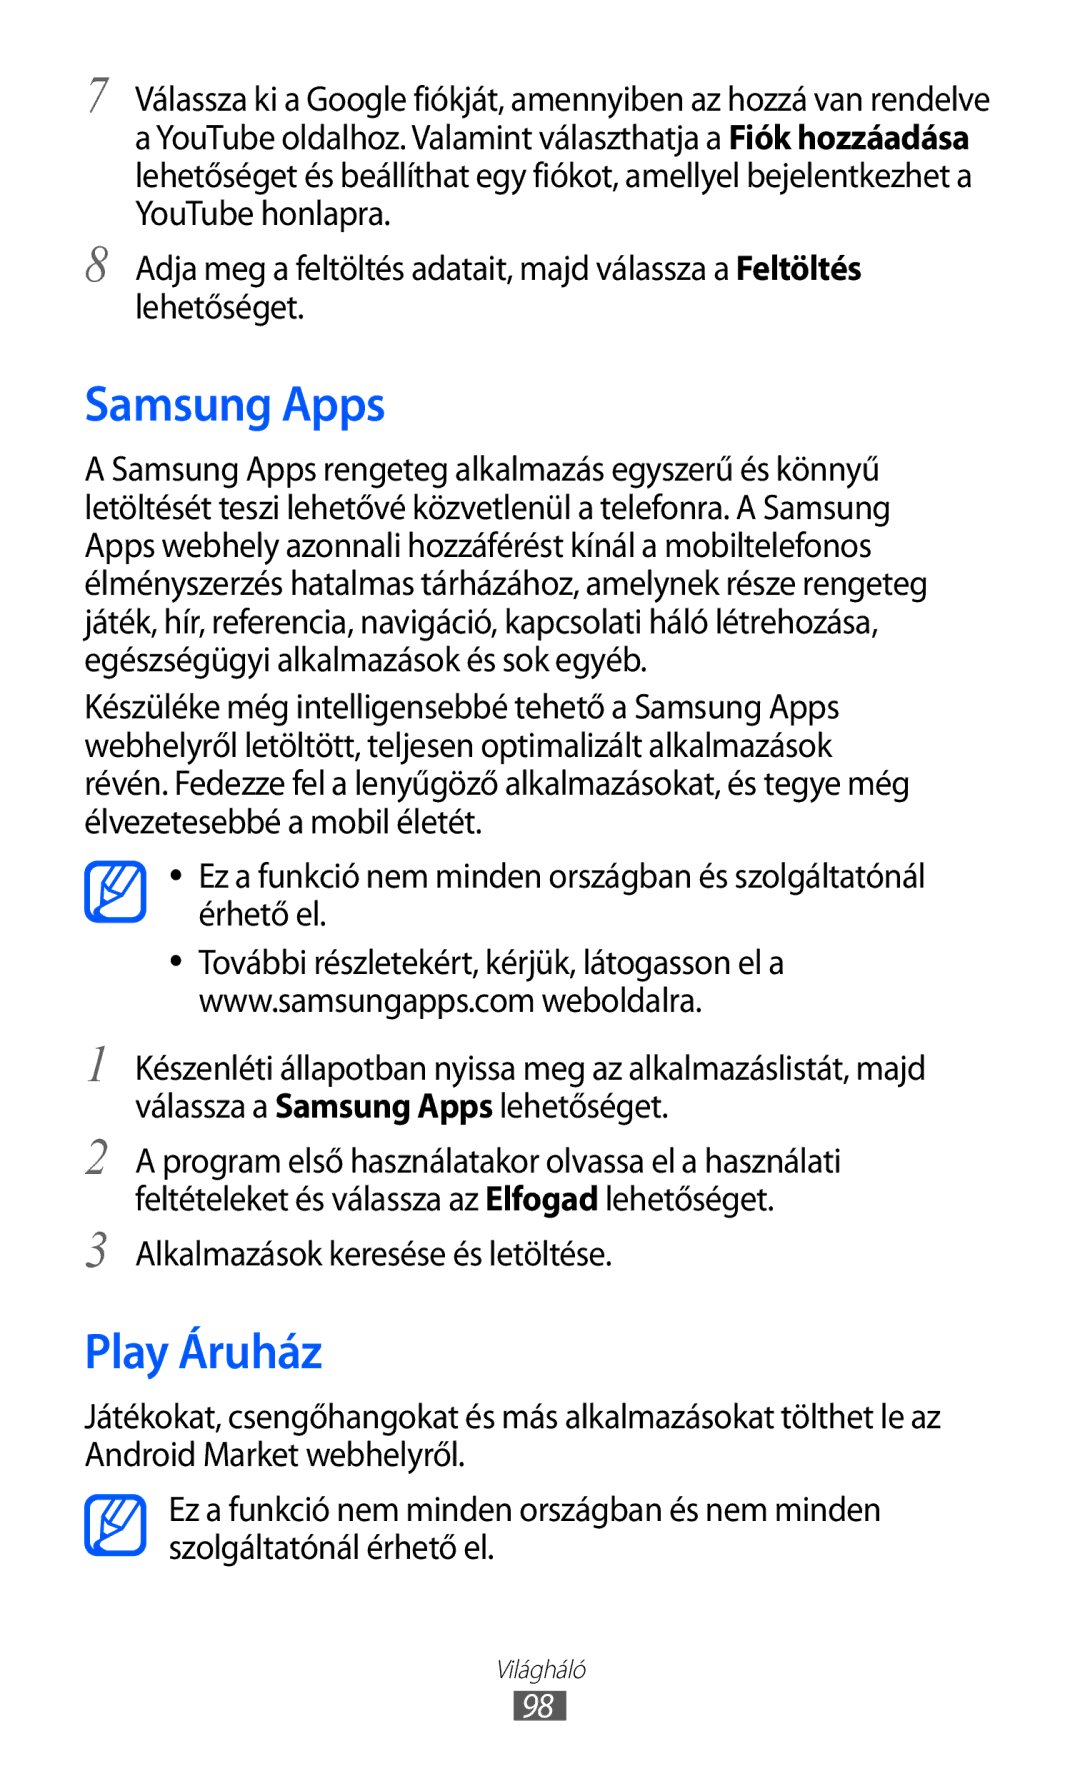 Samsung GT-I9070HKNTMZ, GT-I9070HKNATO, GT-I9070RWNDTM manual Samsung Apps, Play Áruház, Alkalmazások keresése és letöltése 